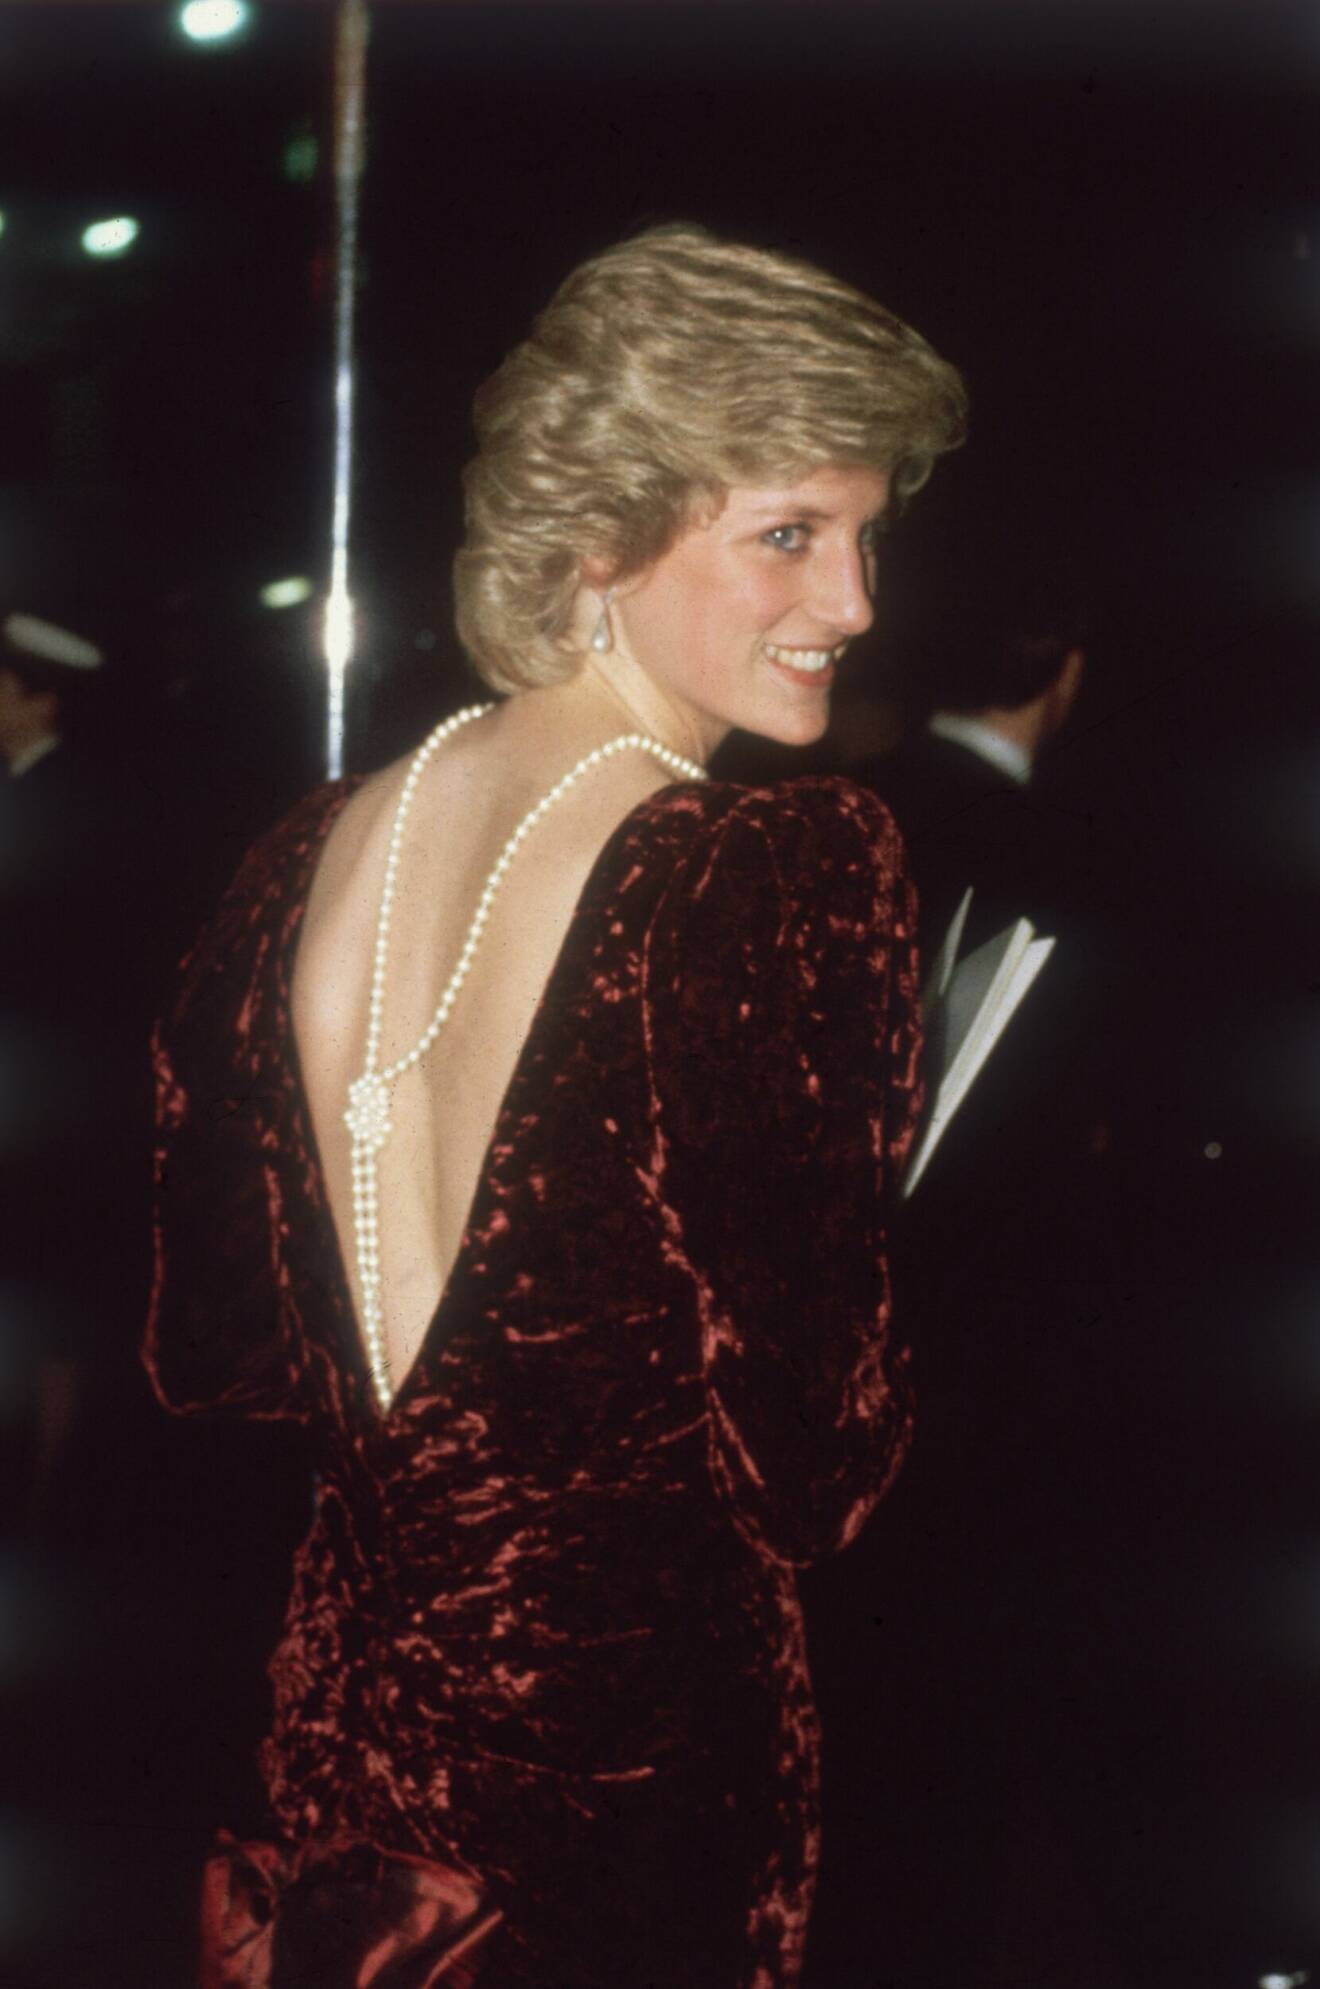 Prinsessan Dianas hemliga stylingknep – pärlhalsband baktill